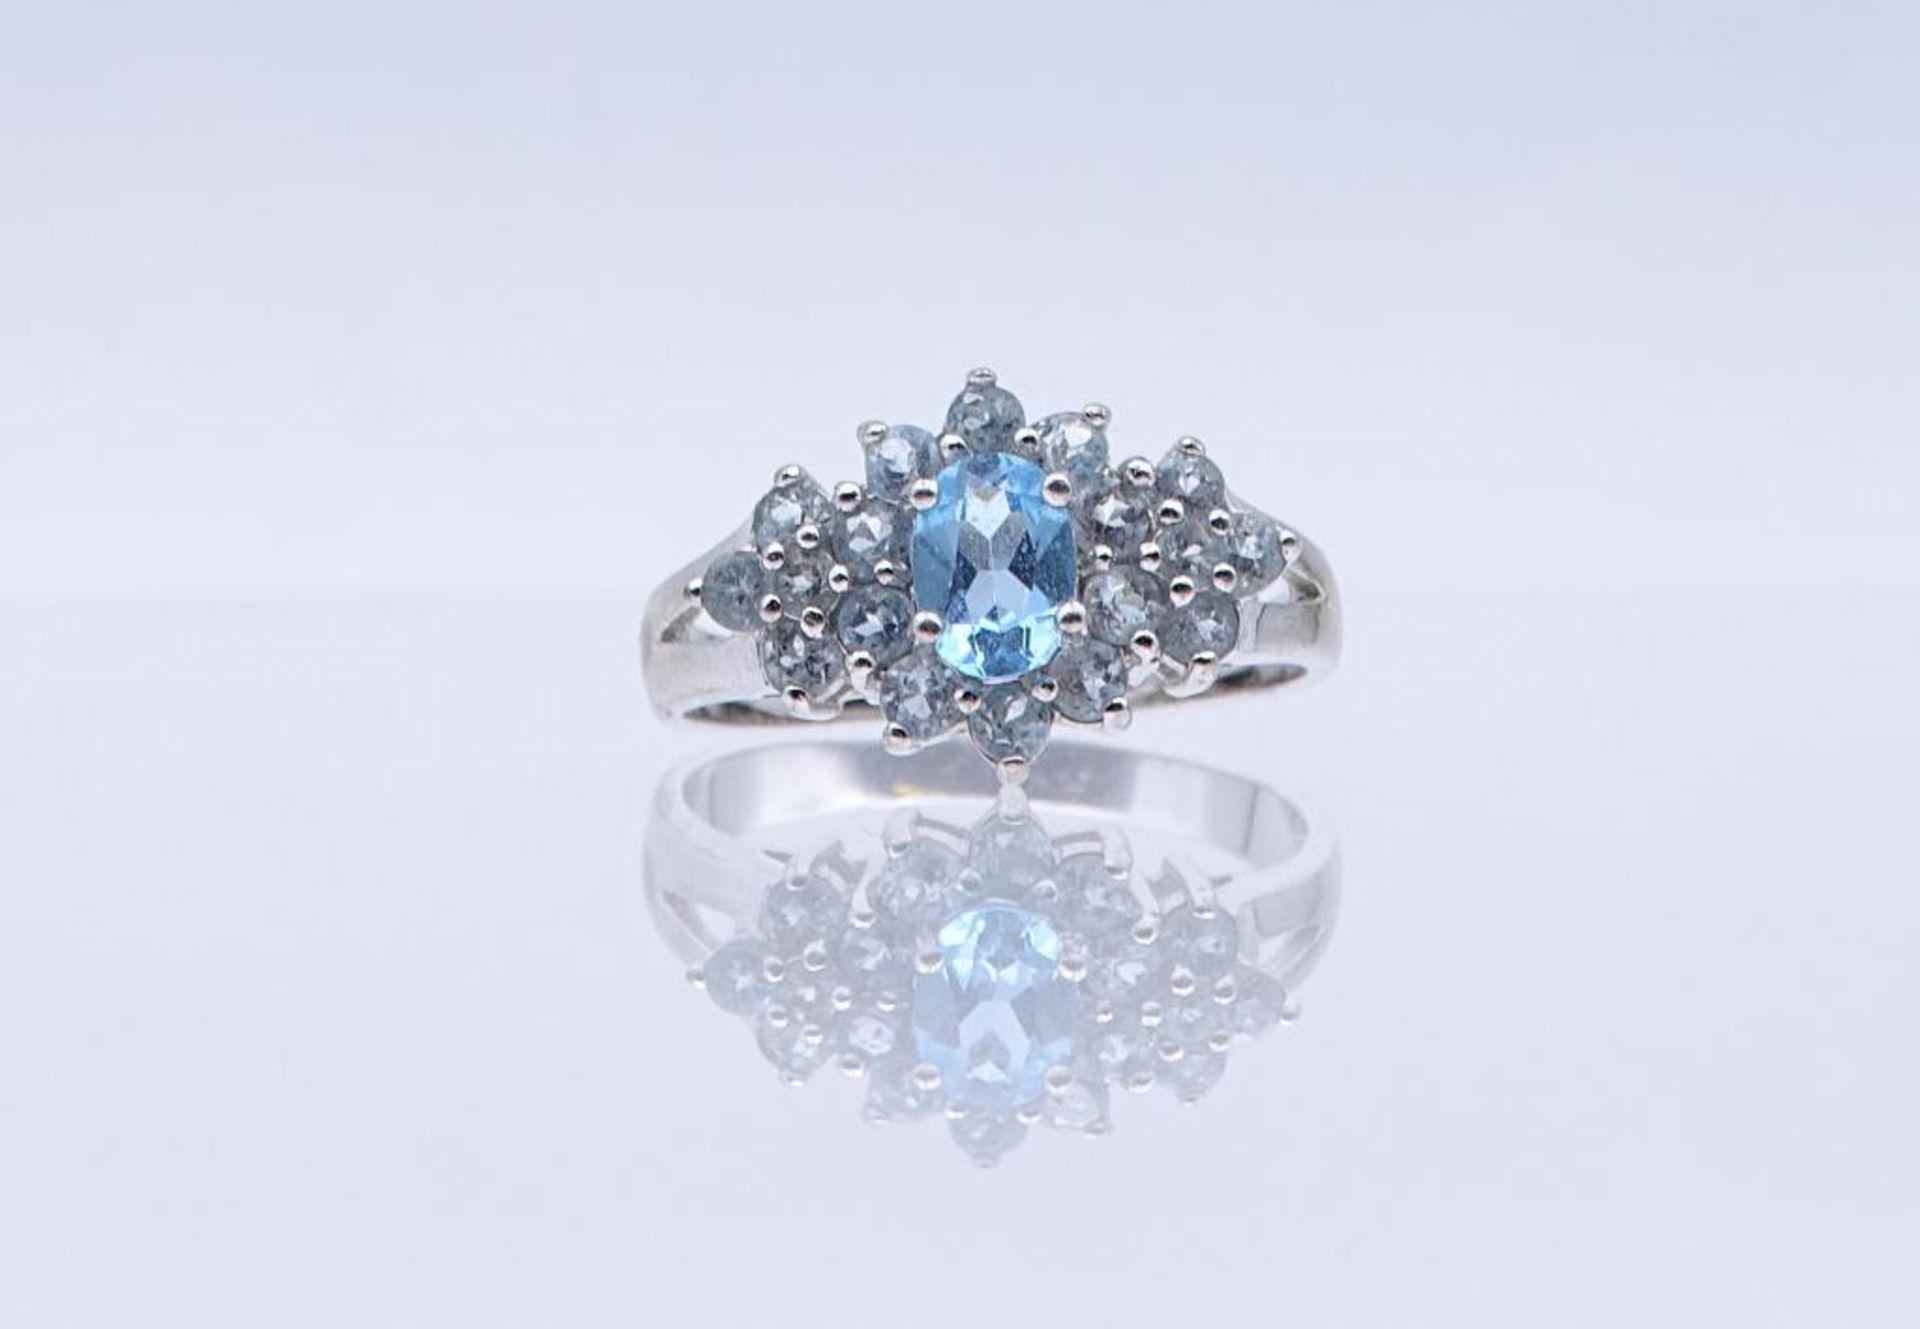 Silber Ring mit blauen facettierten Steinen, Silber 925/000, 4,5gr., RG 63- - -22.61 % buyer's